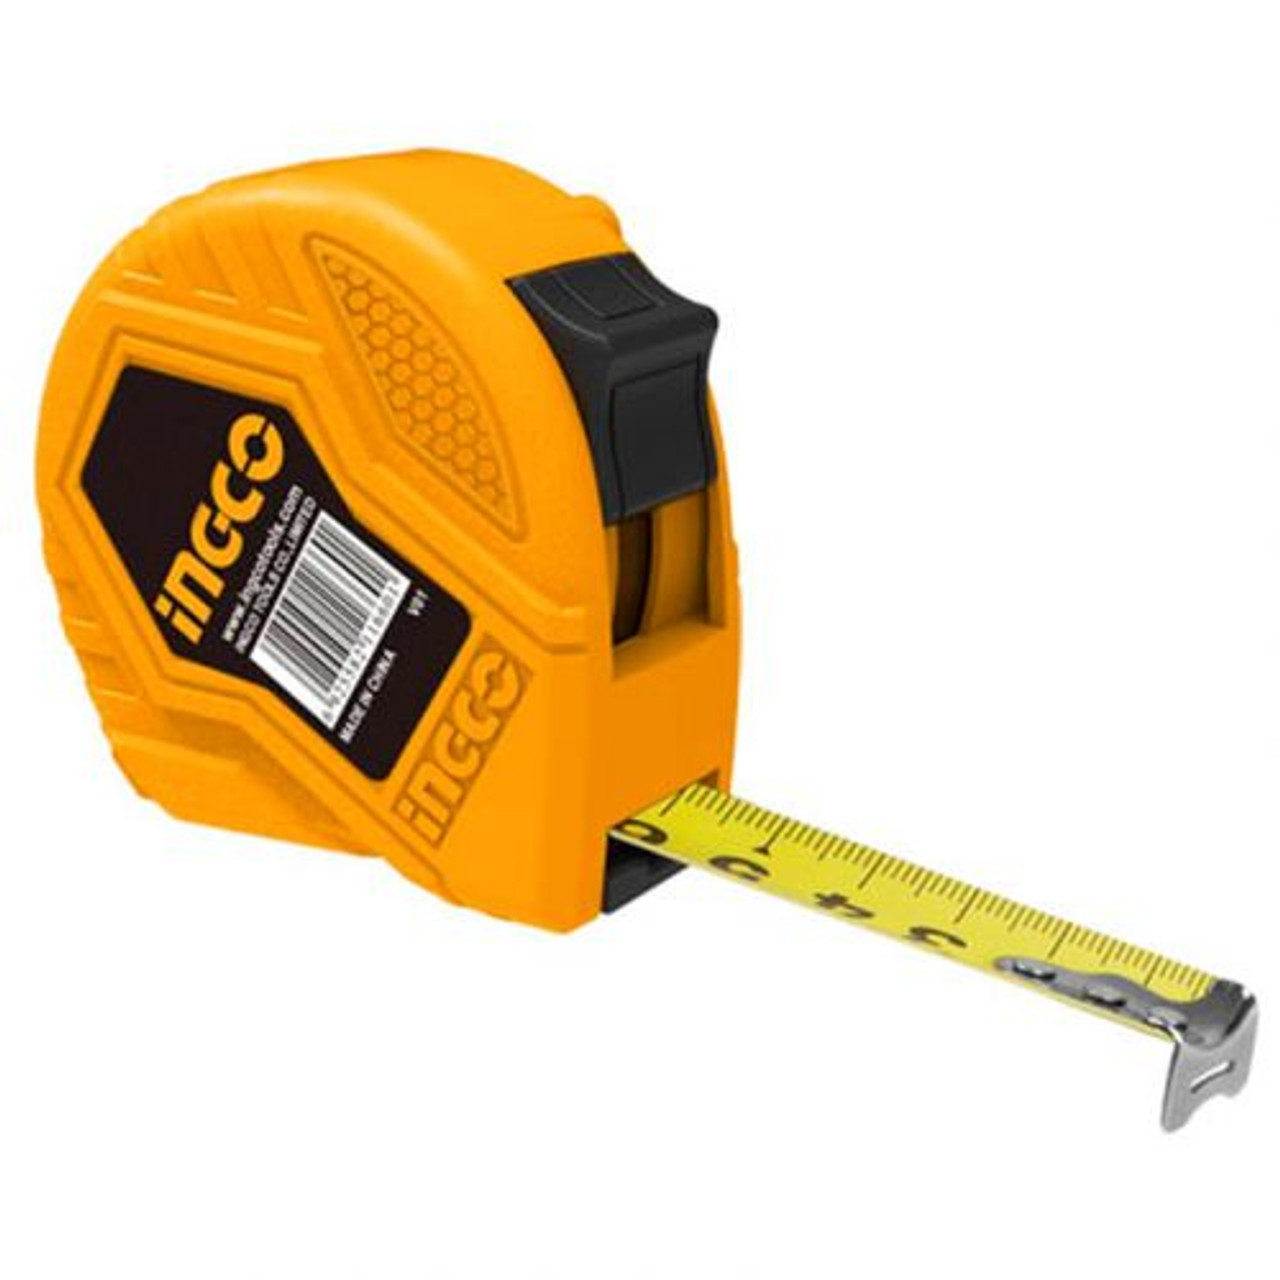 https://www.gz-supplies.com/steel-measuring-tape-ingco-hsmt8550/